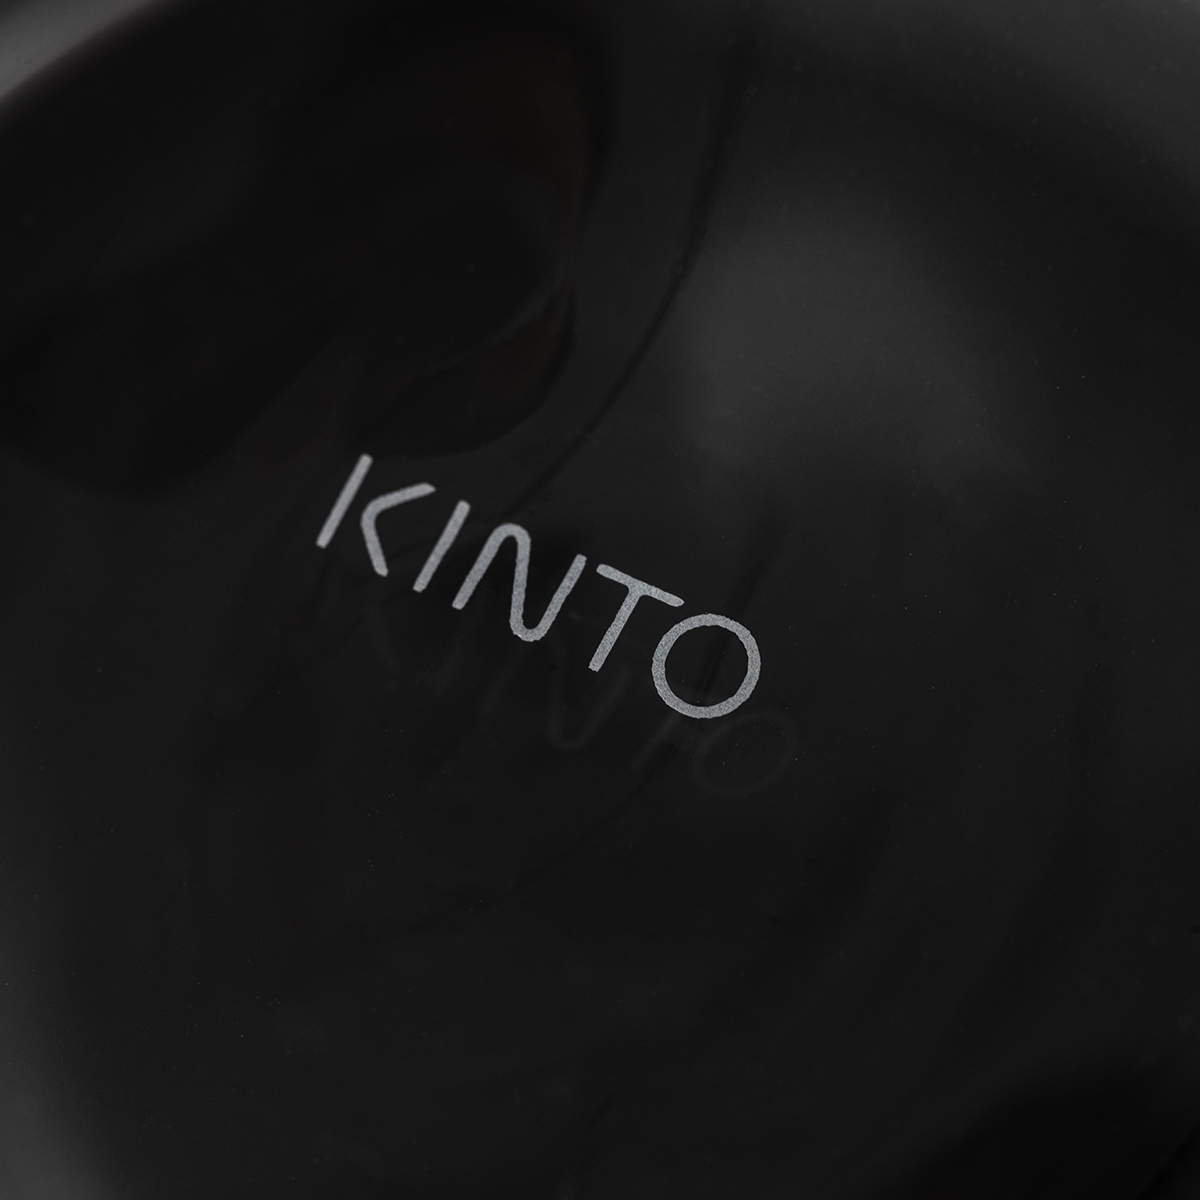 【KINTO】CAST ダブルウォール カクテルグラス 290ml